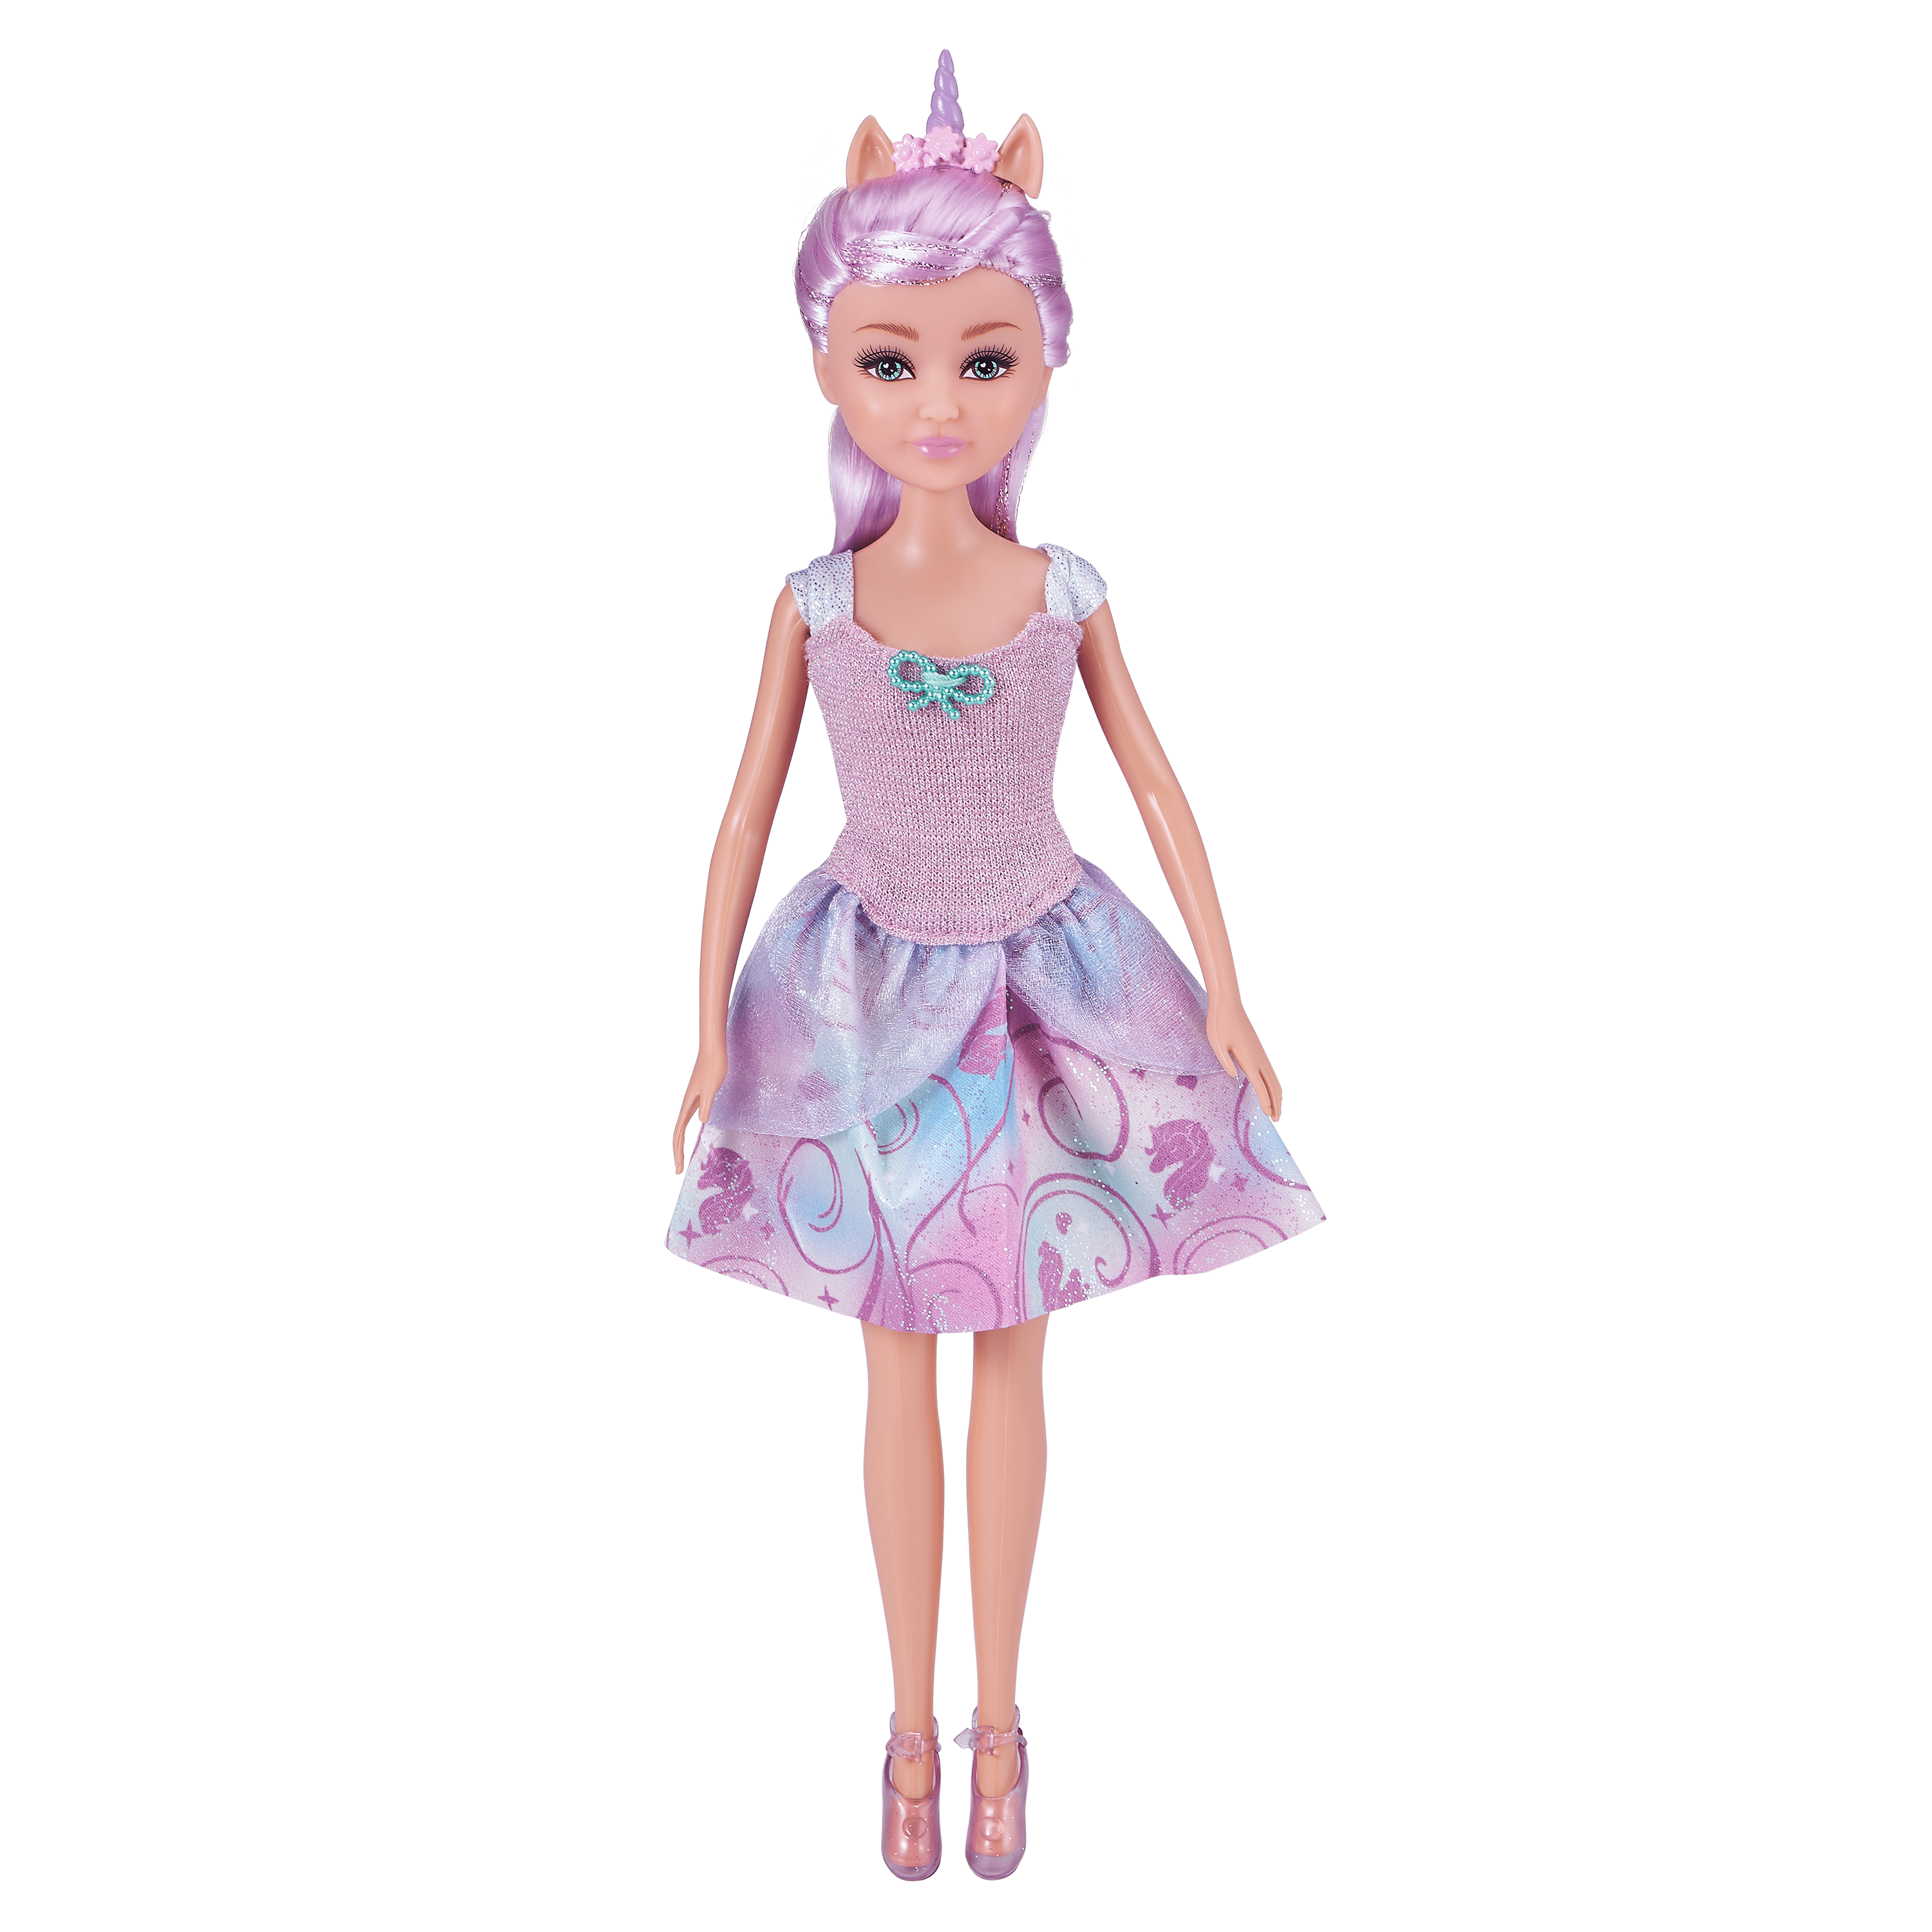 sparkle & shine fashion doll house